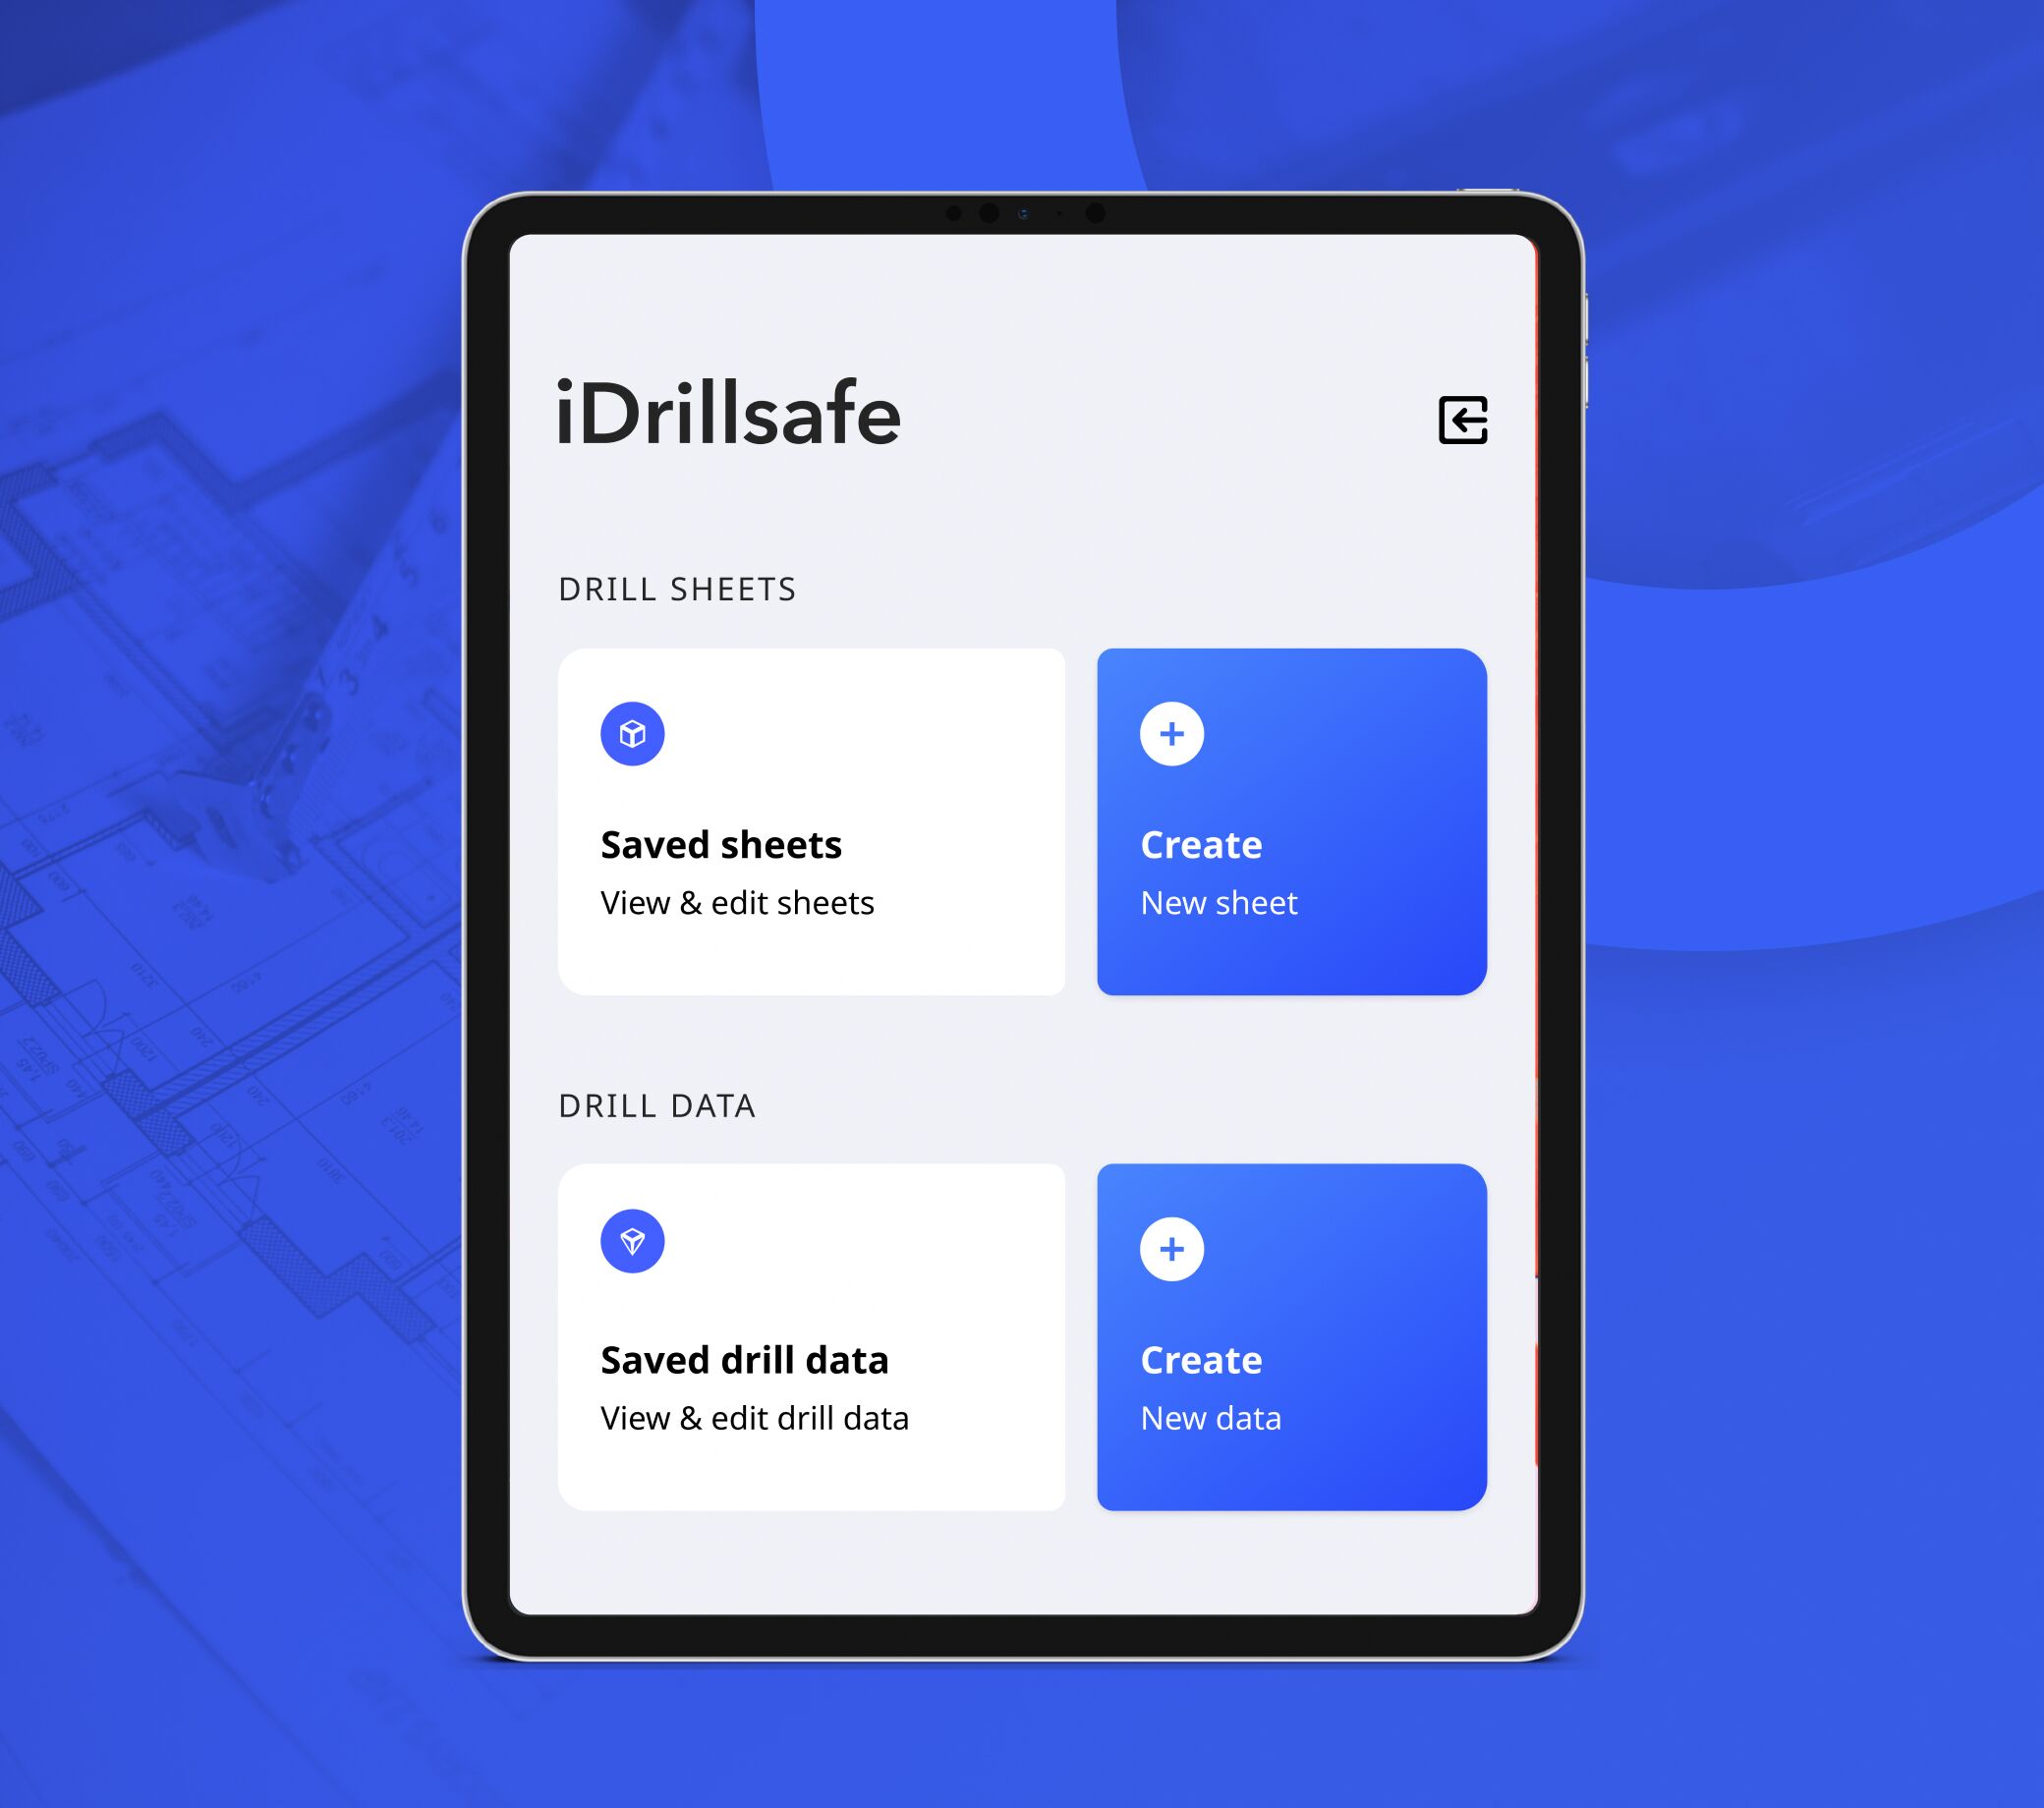 iDrillsafe tablet app